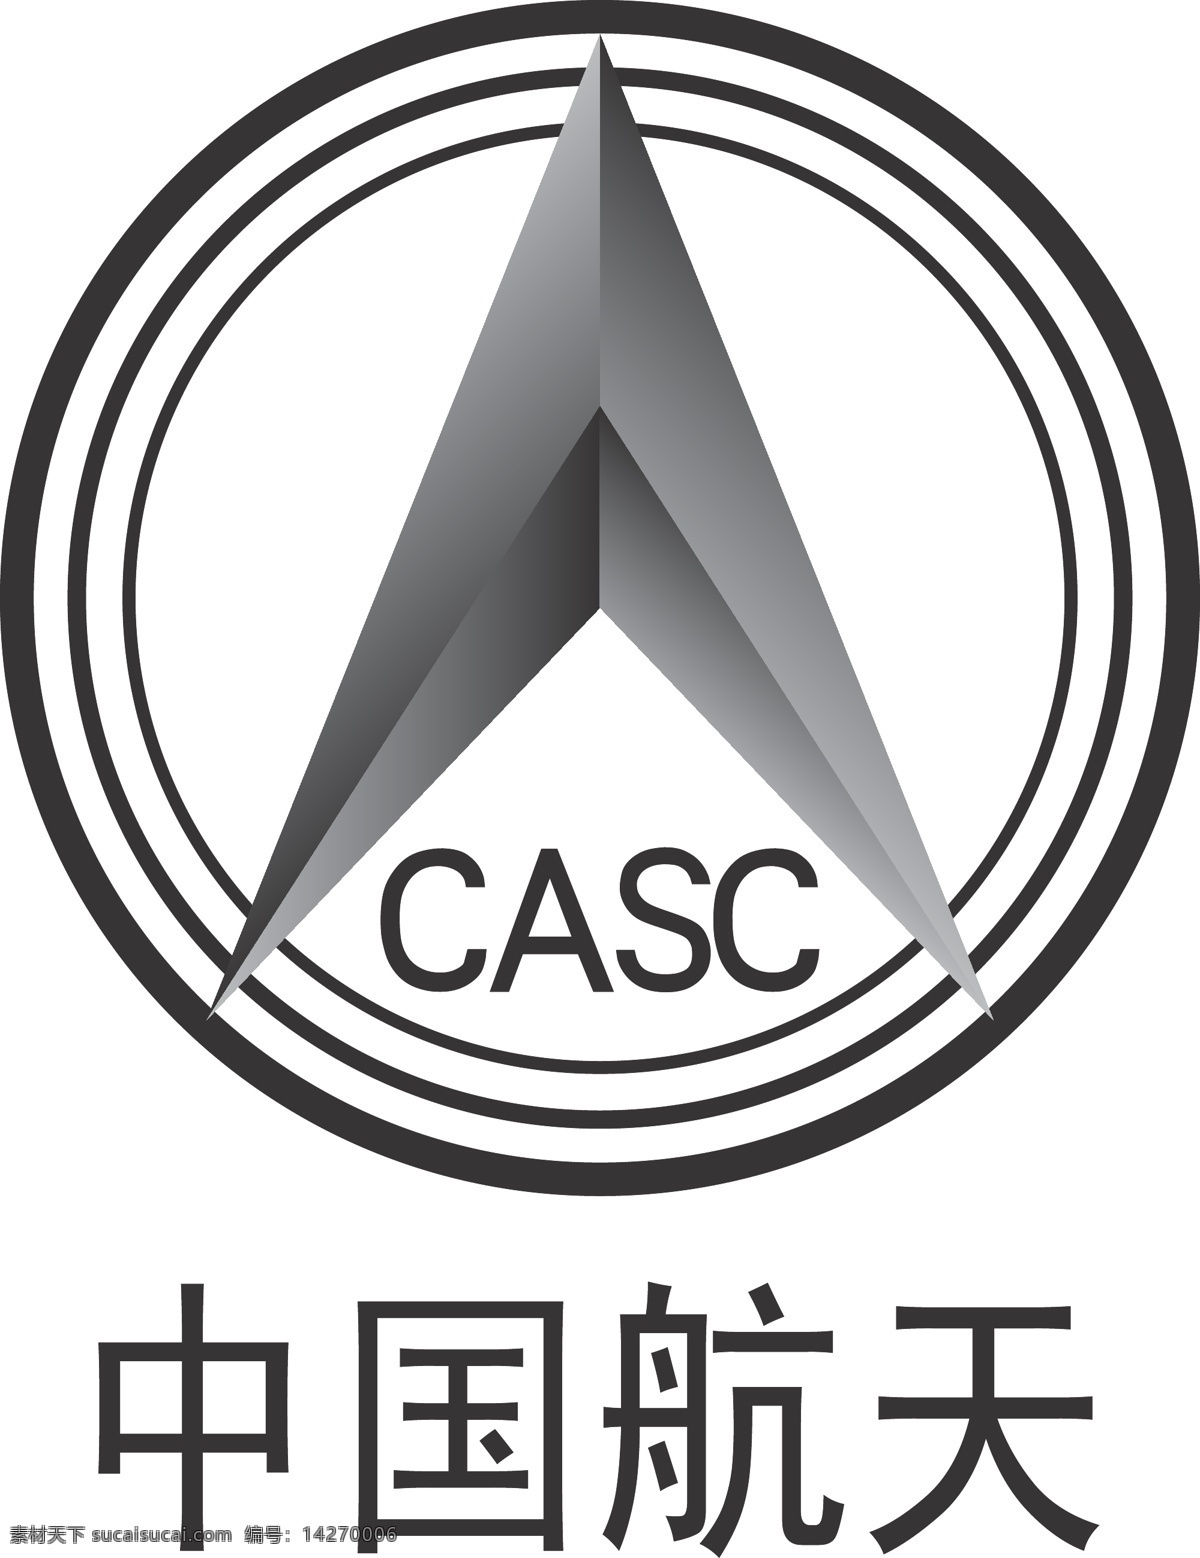 中国航天 logo 标识标志图标 企业 标志 矢量图库